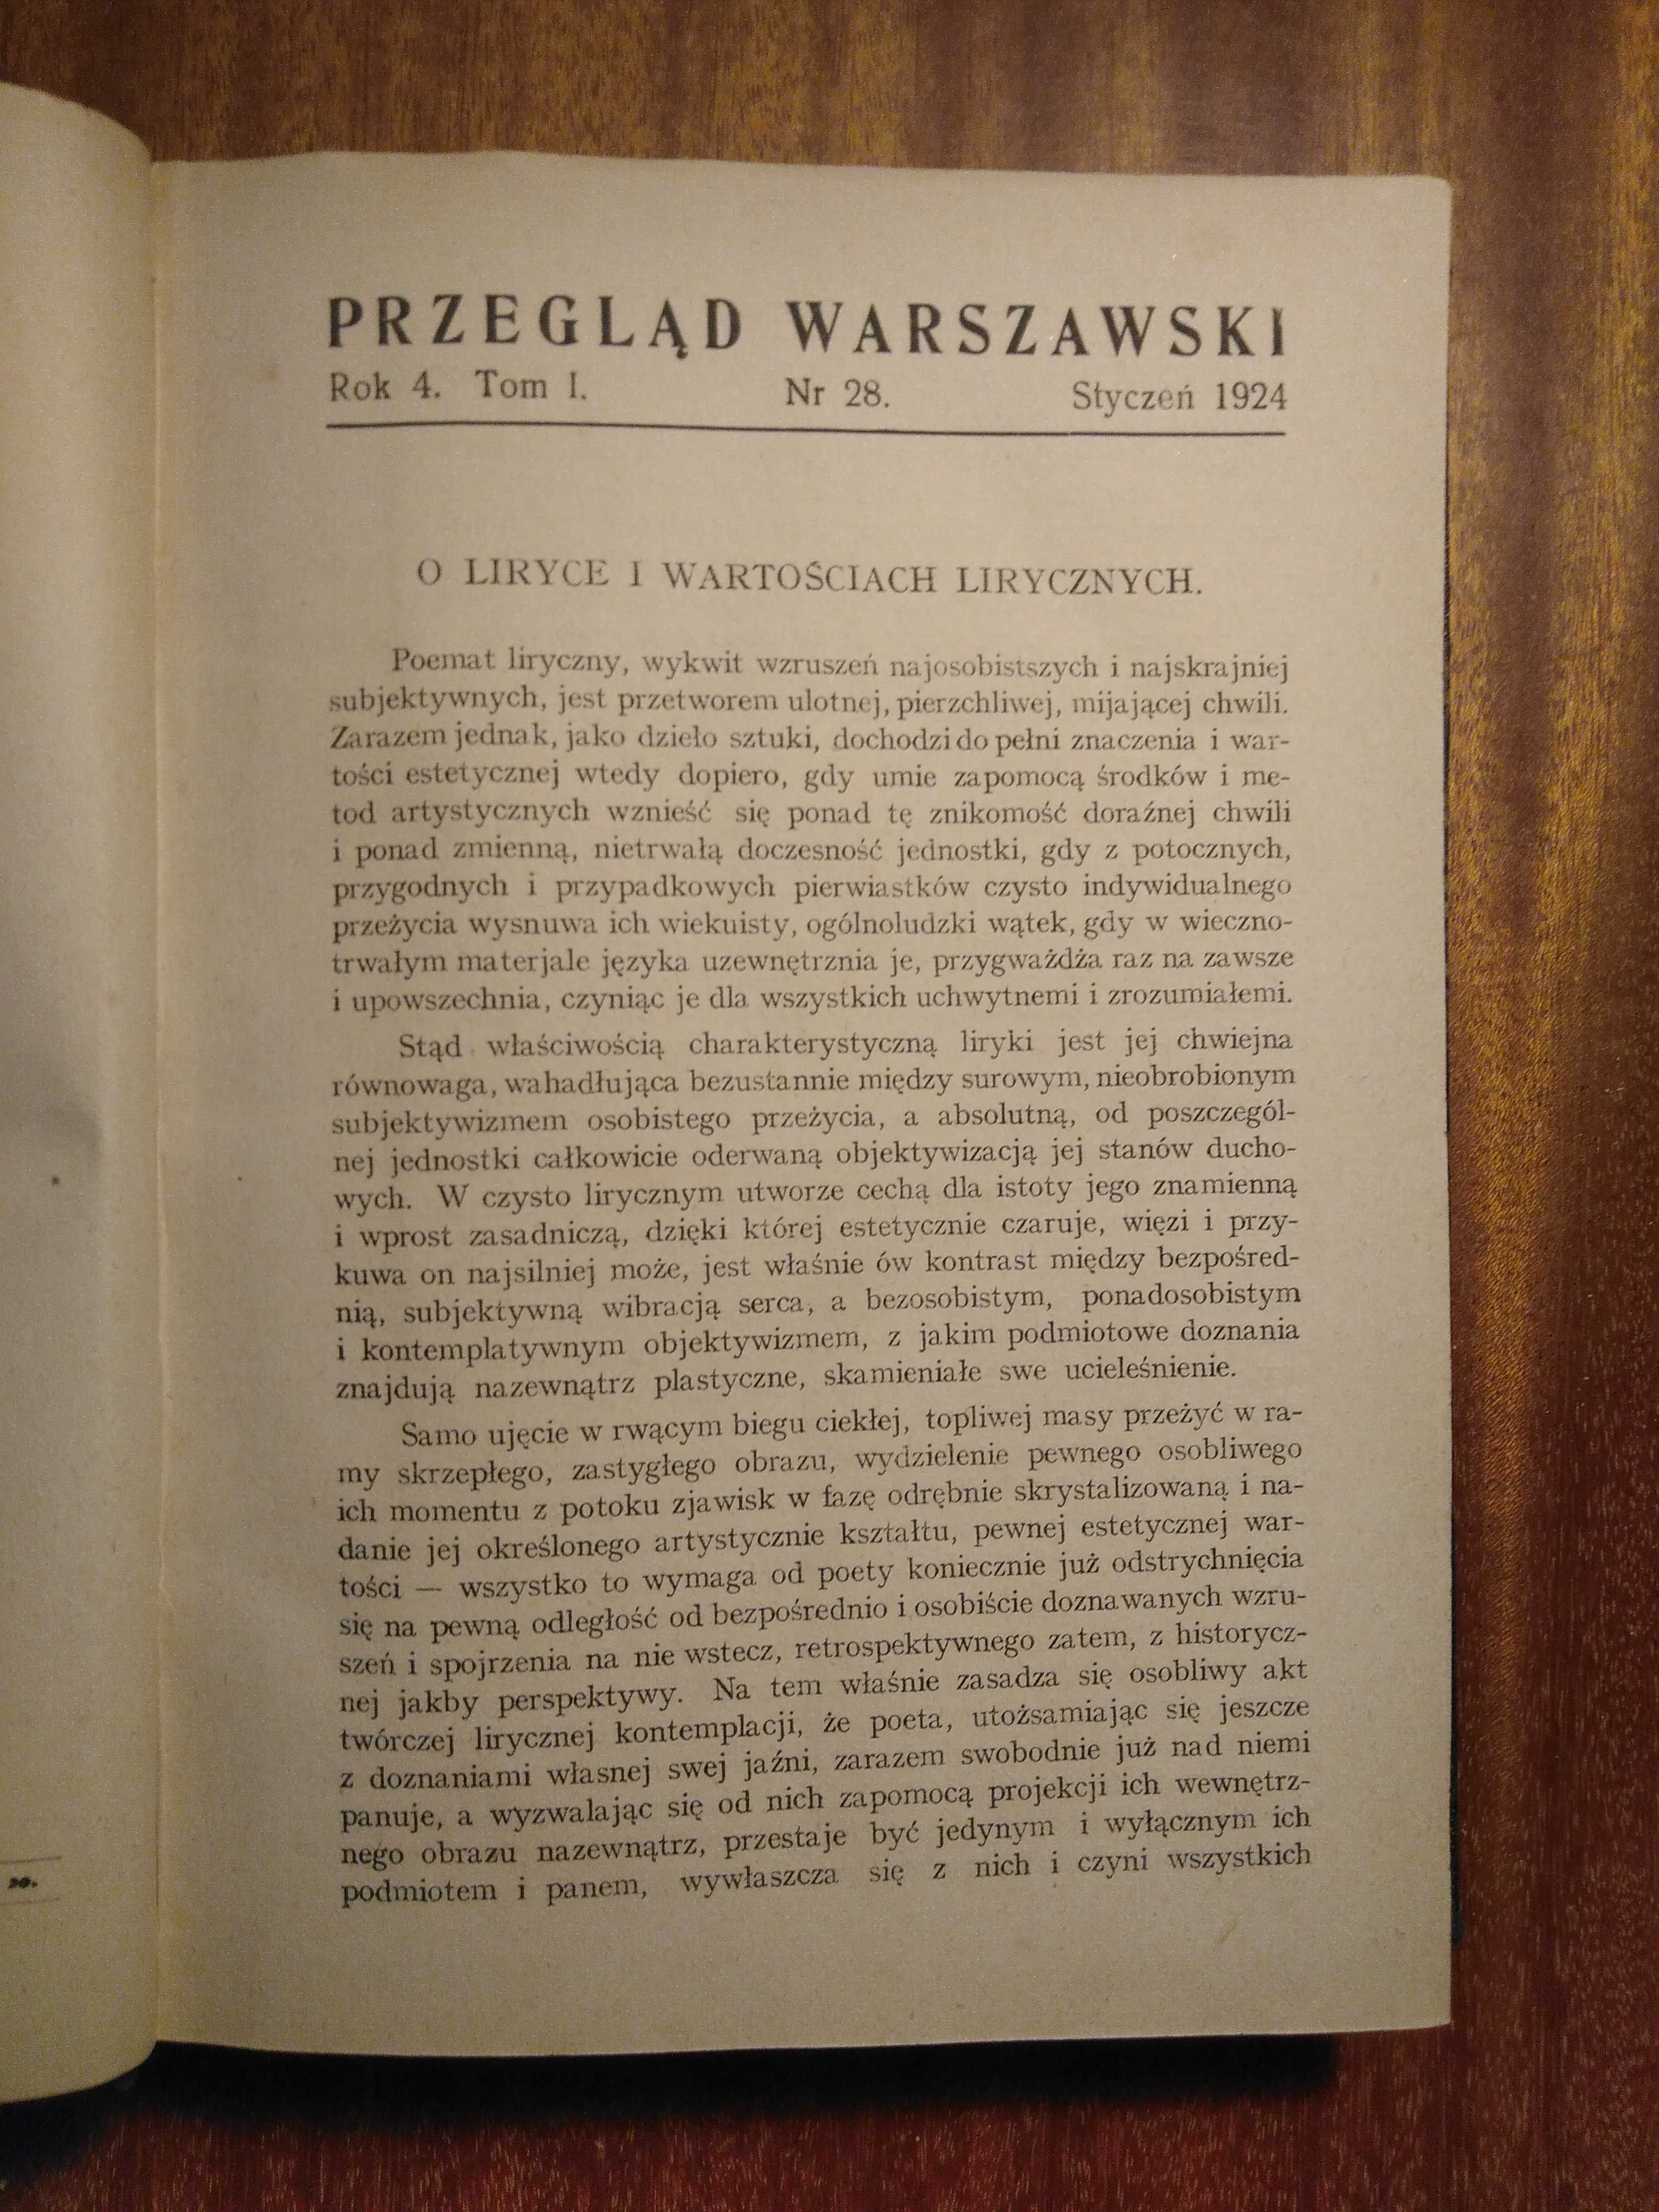 Przegląd Warszawski - Rok 4 - 1924 - Tom I